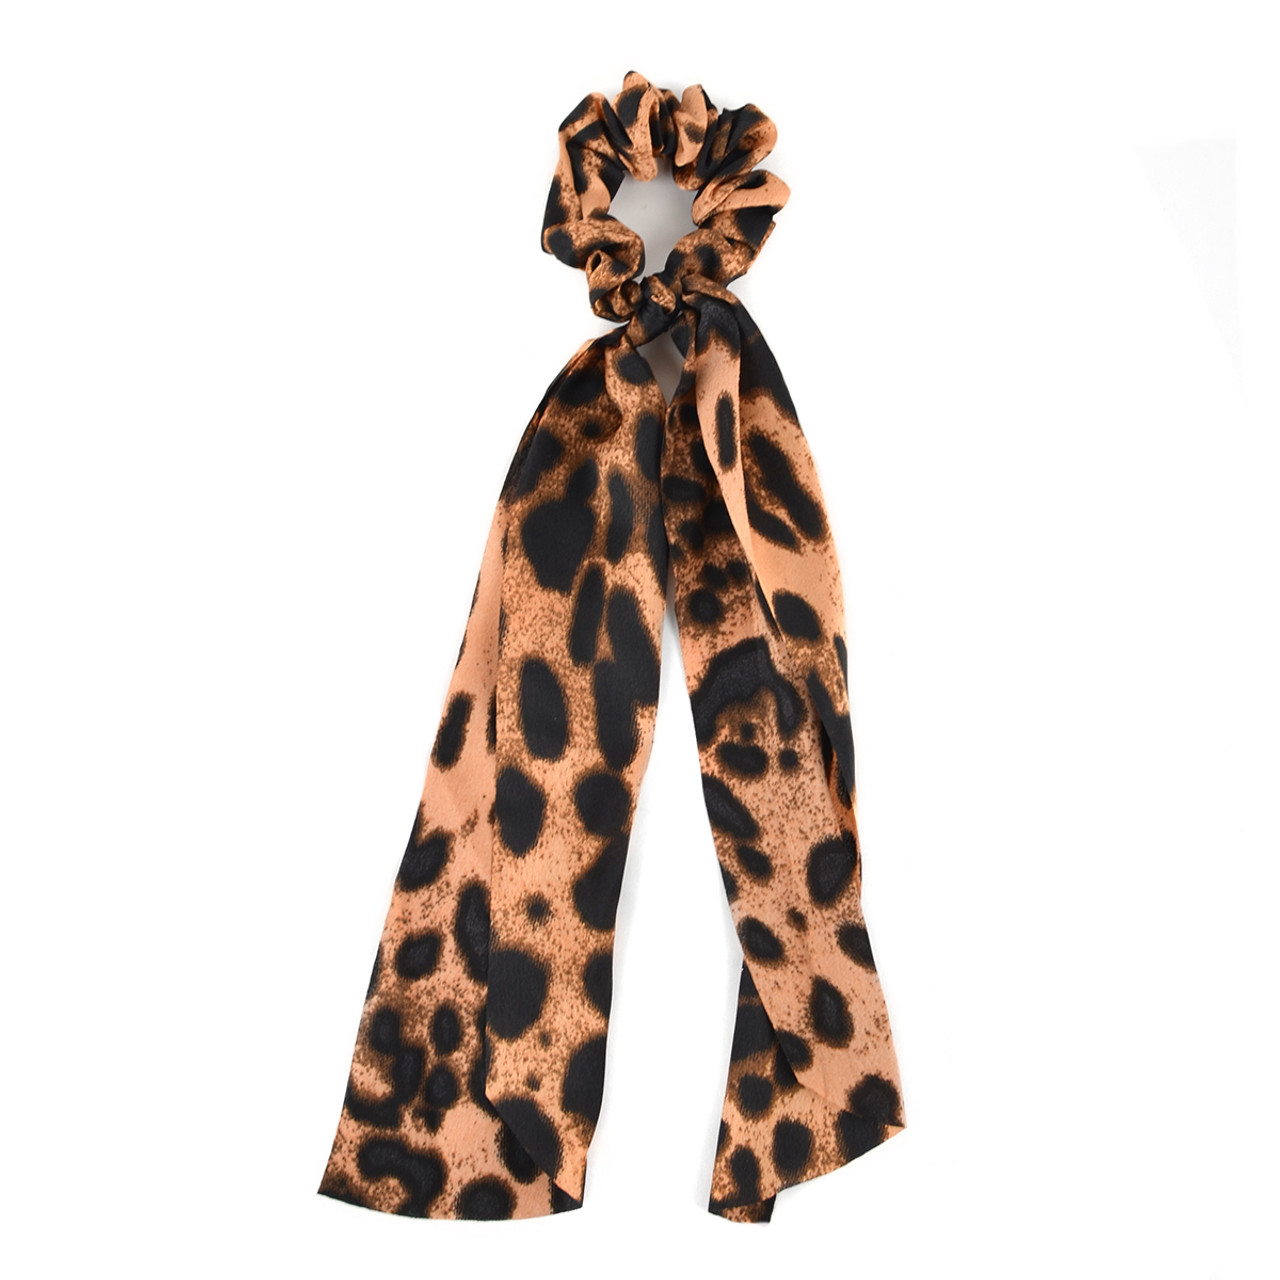  RTTYOA Silk Satin Scrunchies, Leopard Cheetah Hair